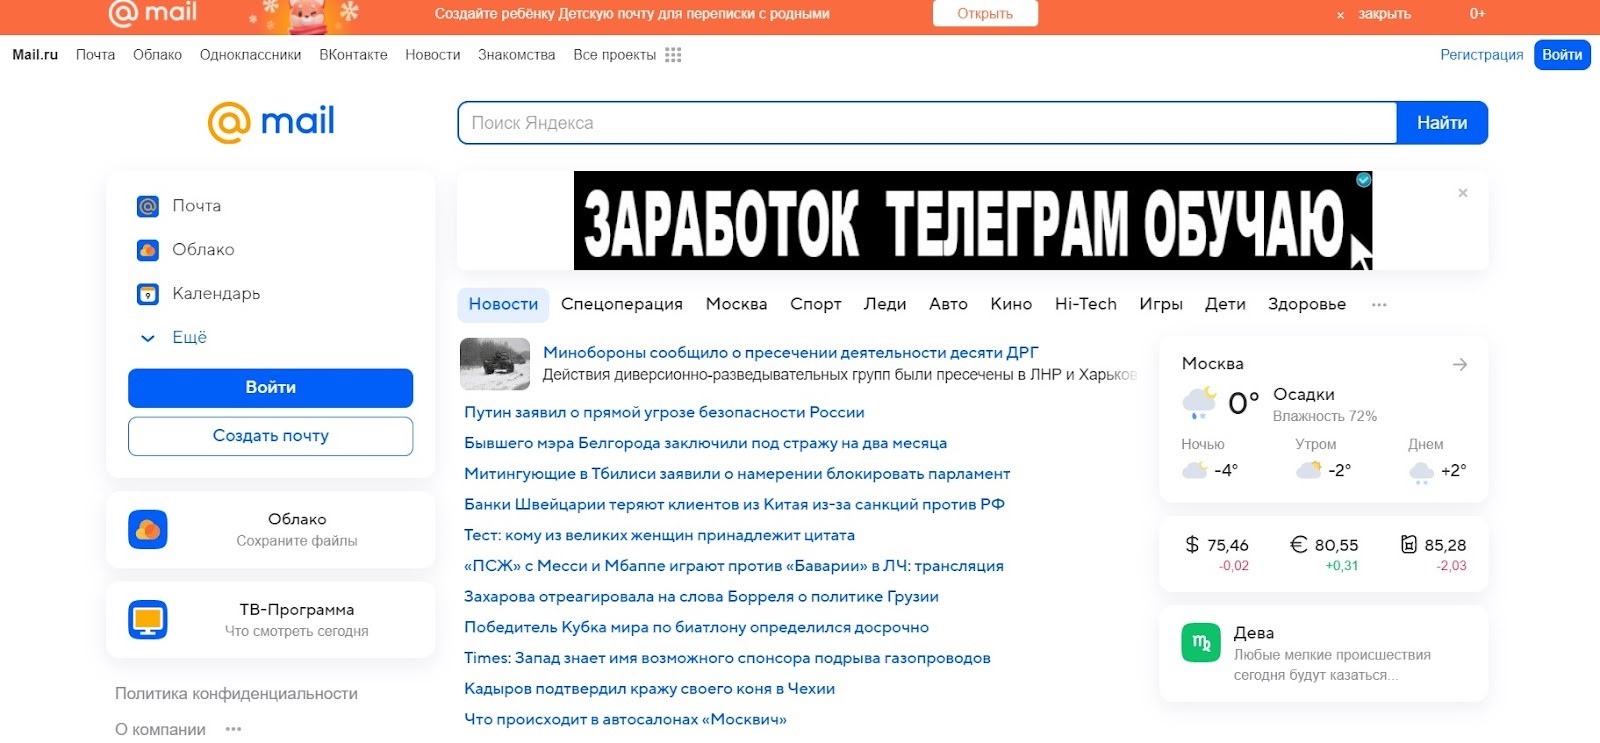 Mail.Ru - поисковая система на русском языке